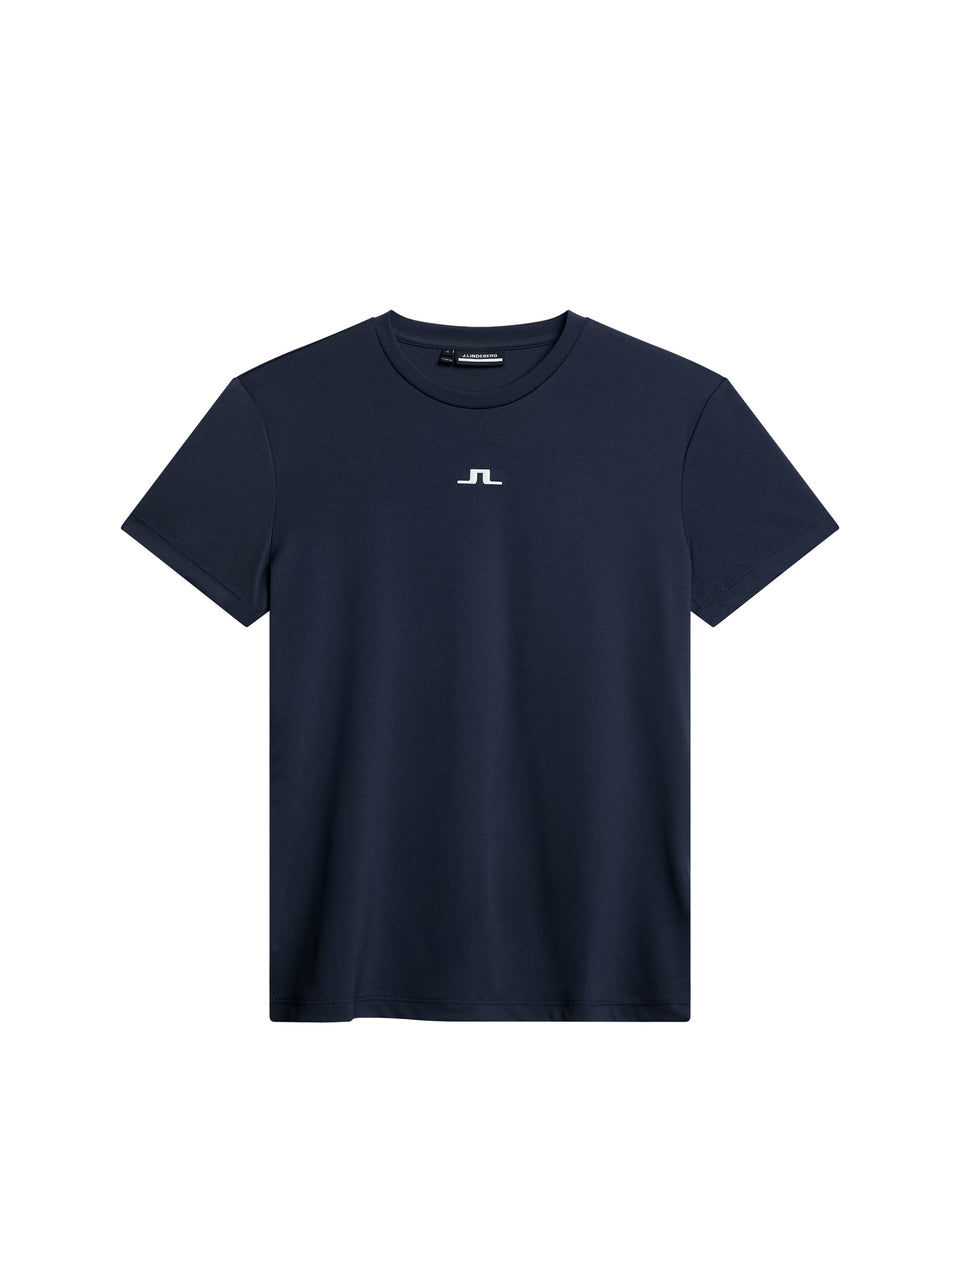 Ada T-shirt / JL Navy